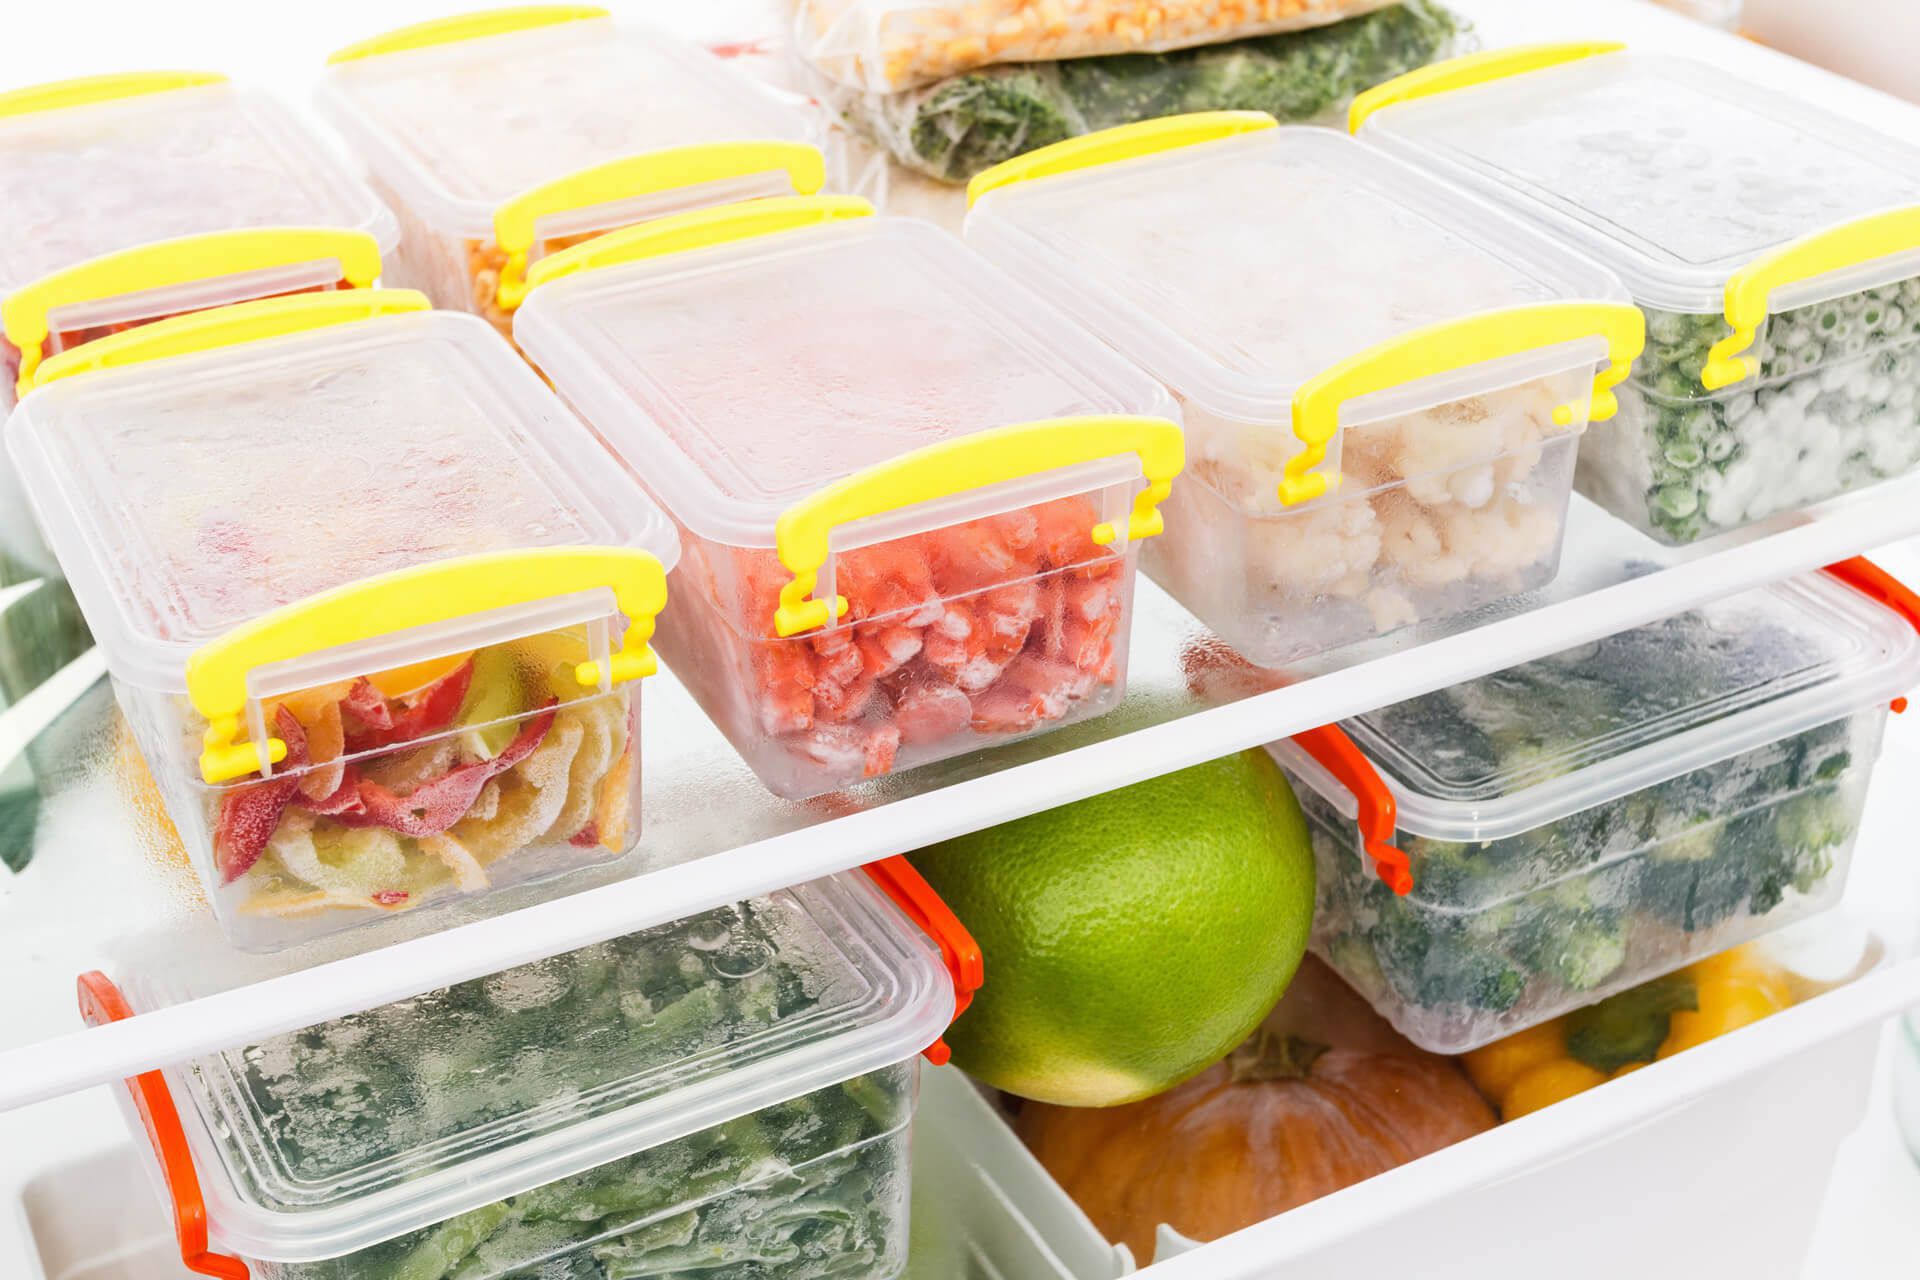 Với những bữa ăn thừa hoặc thực phẩm chín bạn nên cho vào hộp kín rồi để vào tủ